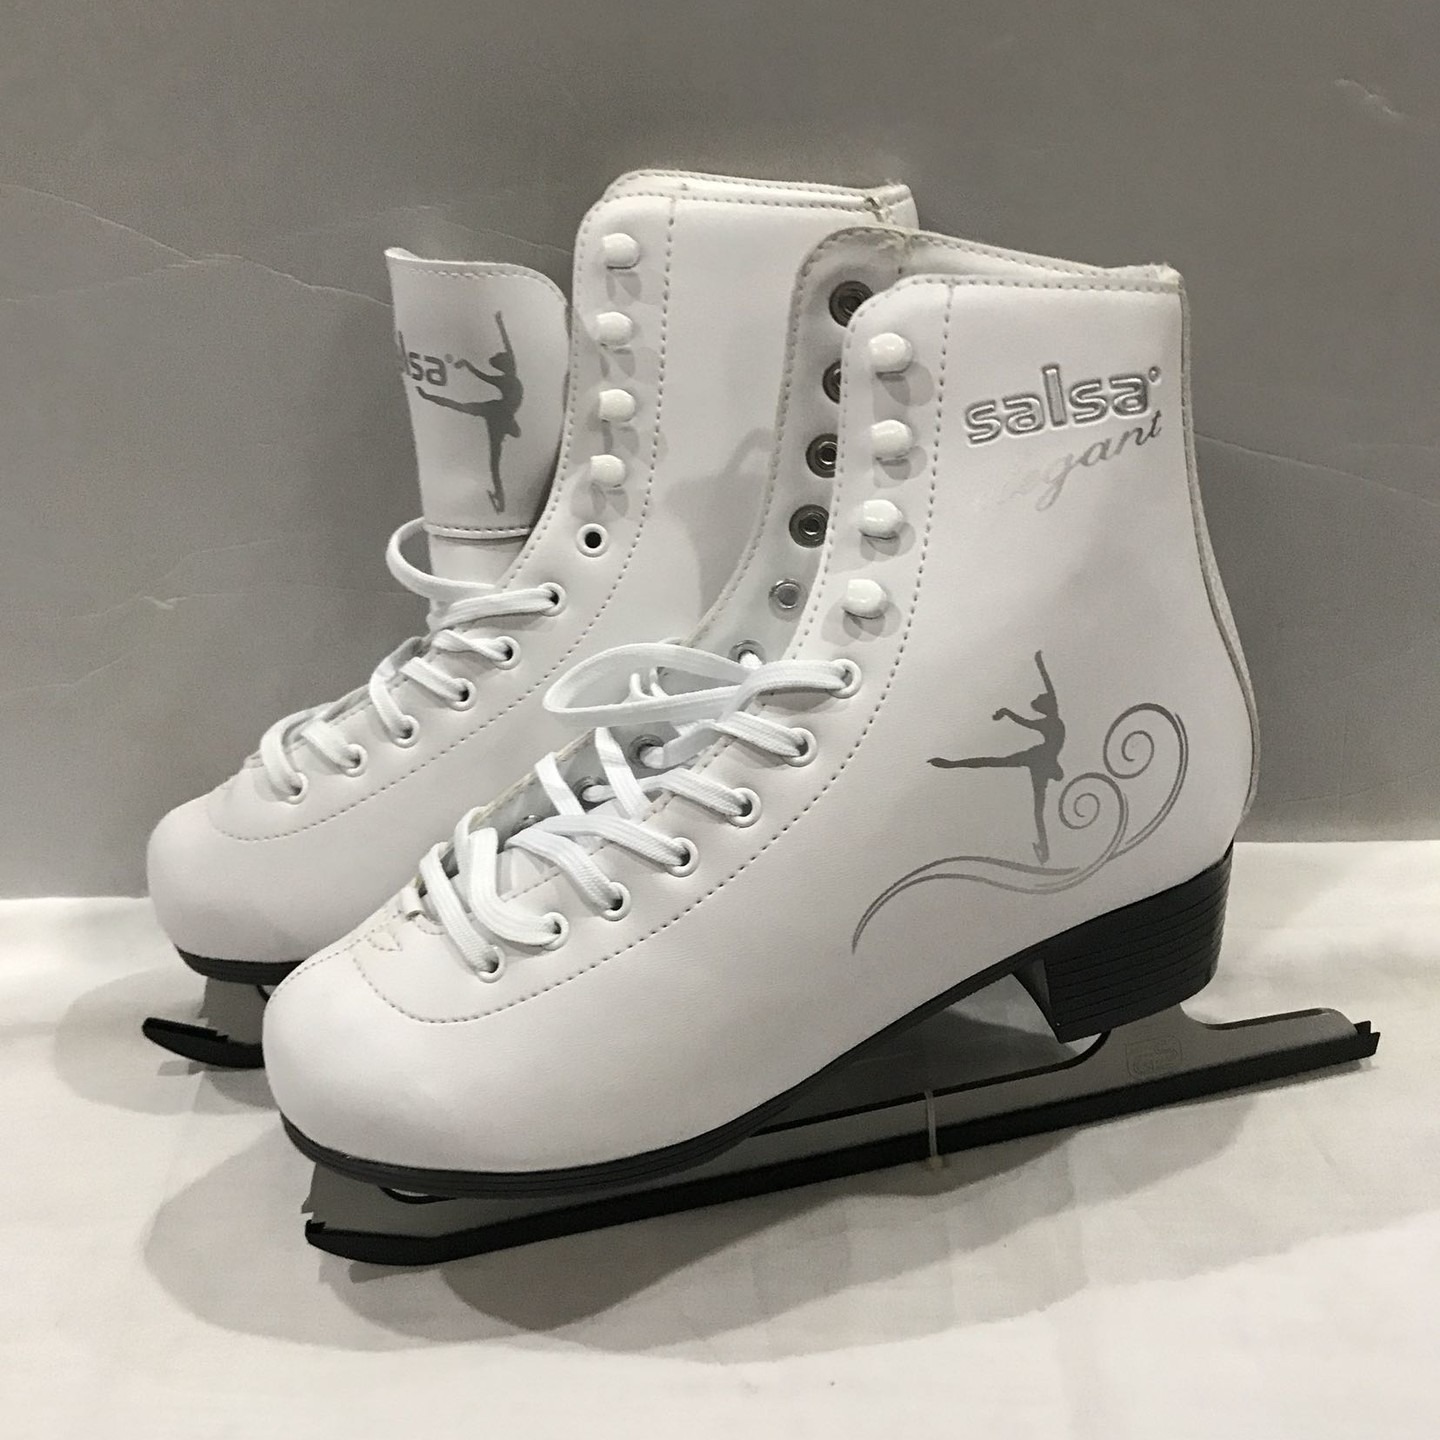 旭兴XX-01滑冰刀 溜冰鞋   成人儿童冰刀鞋   溜冰鞋  花样滑冰鞋